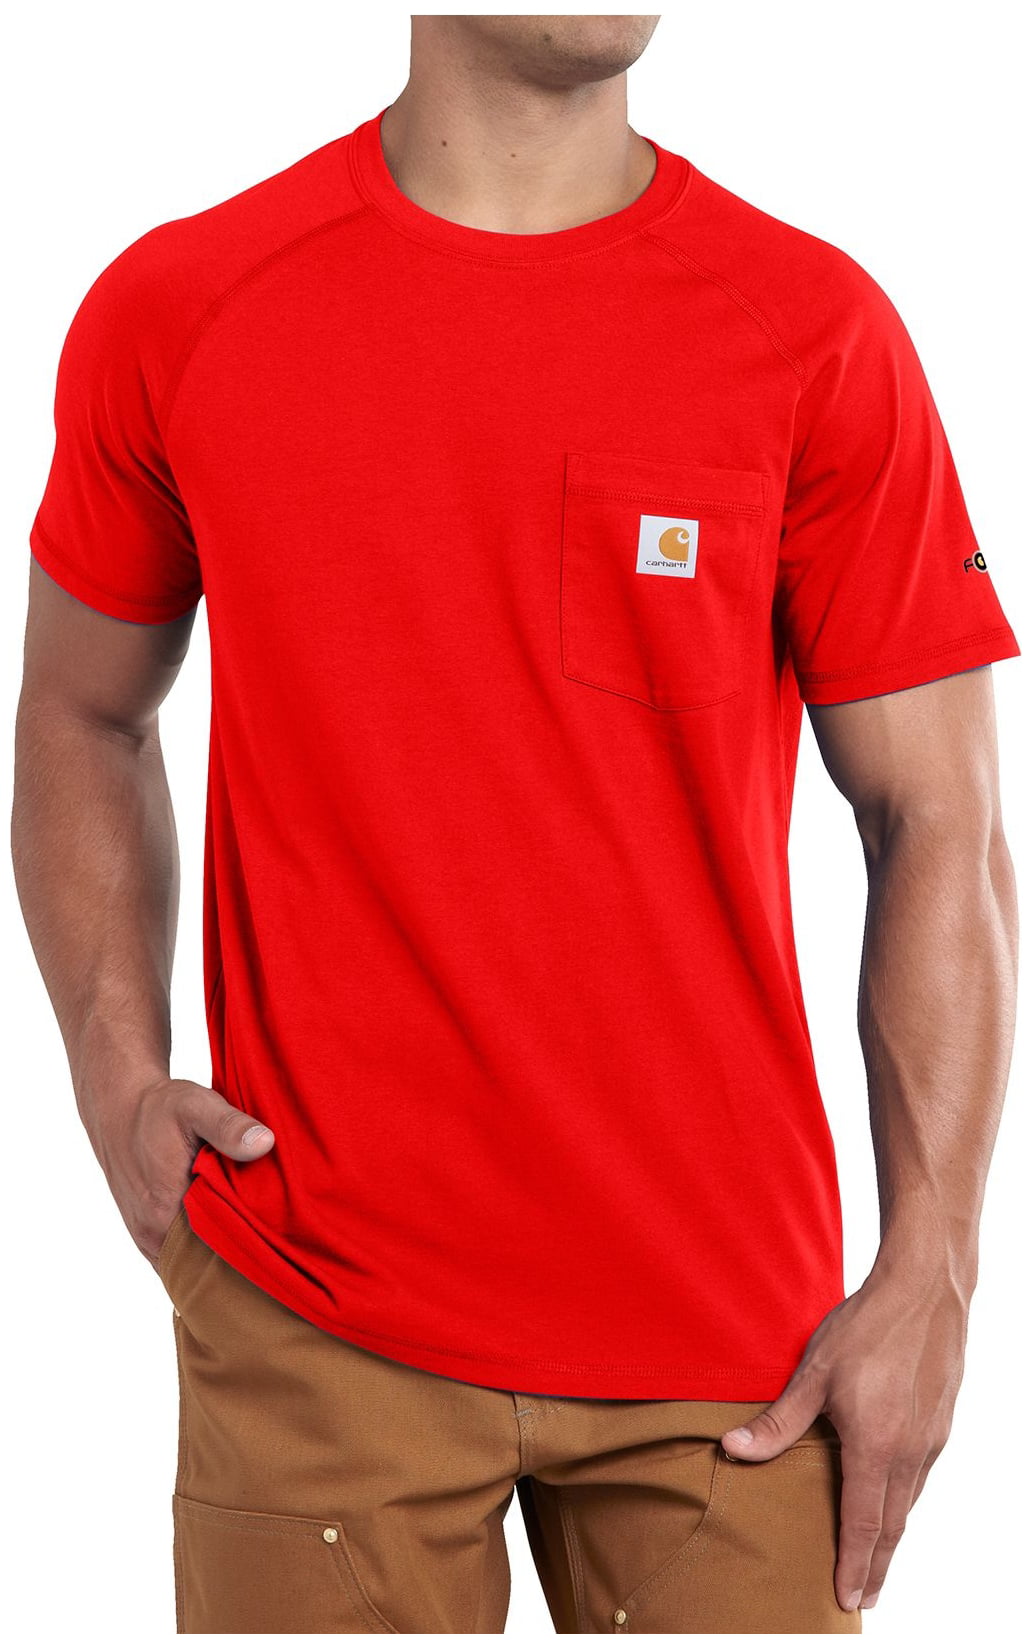 red carhartt shirt